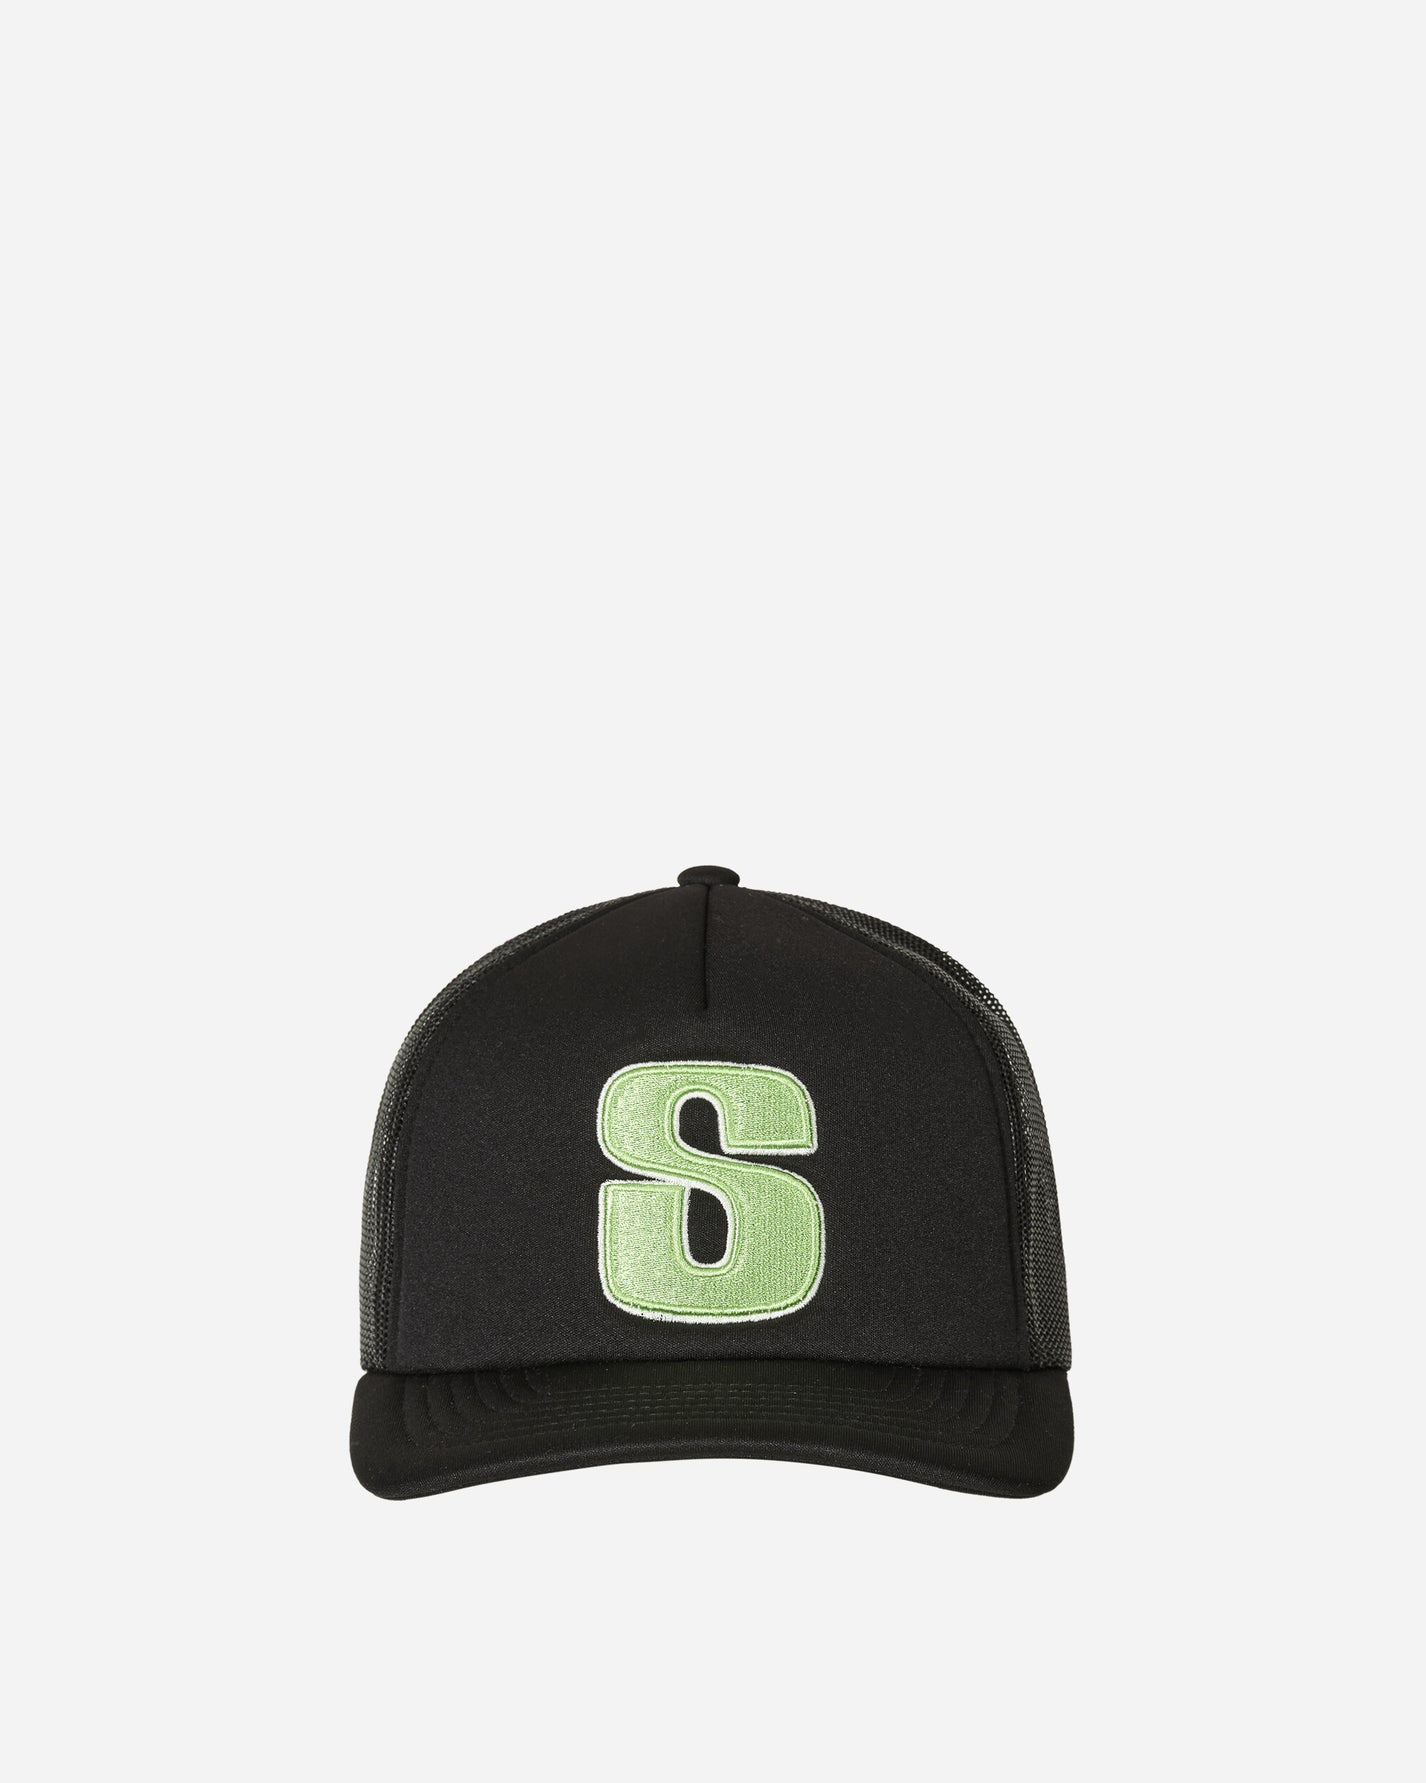 Stüssy Big S Trucker Cap Black Hats Caps 1311132 0001